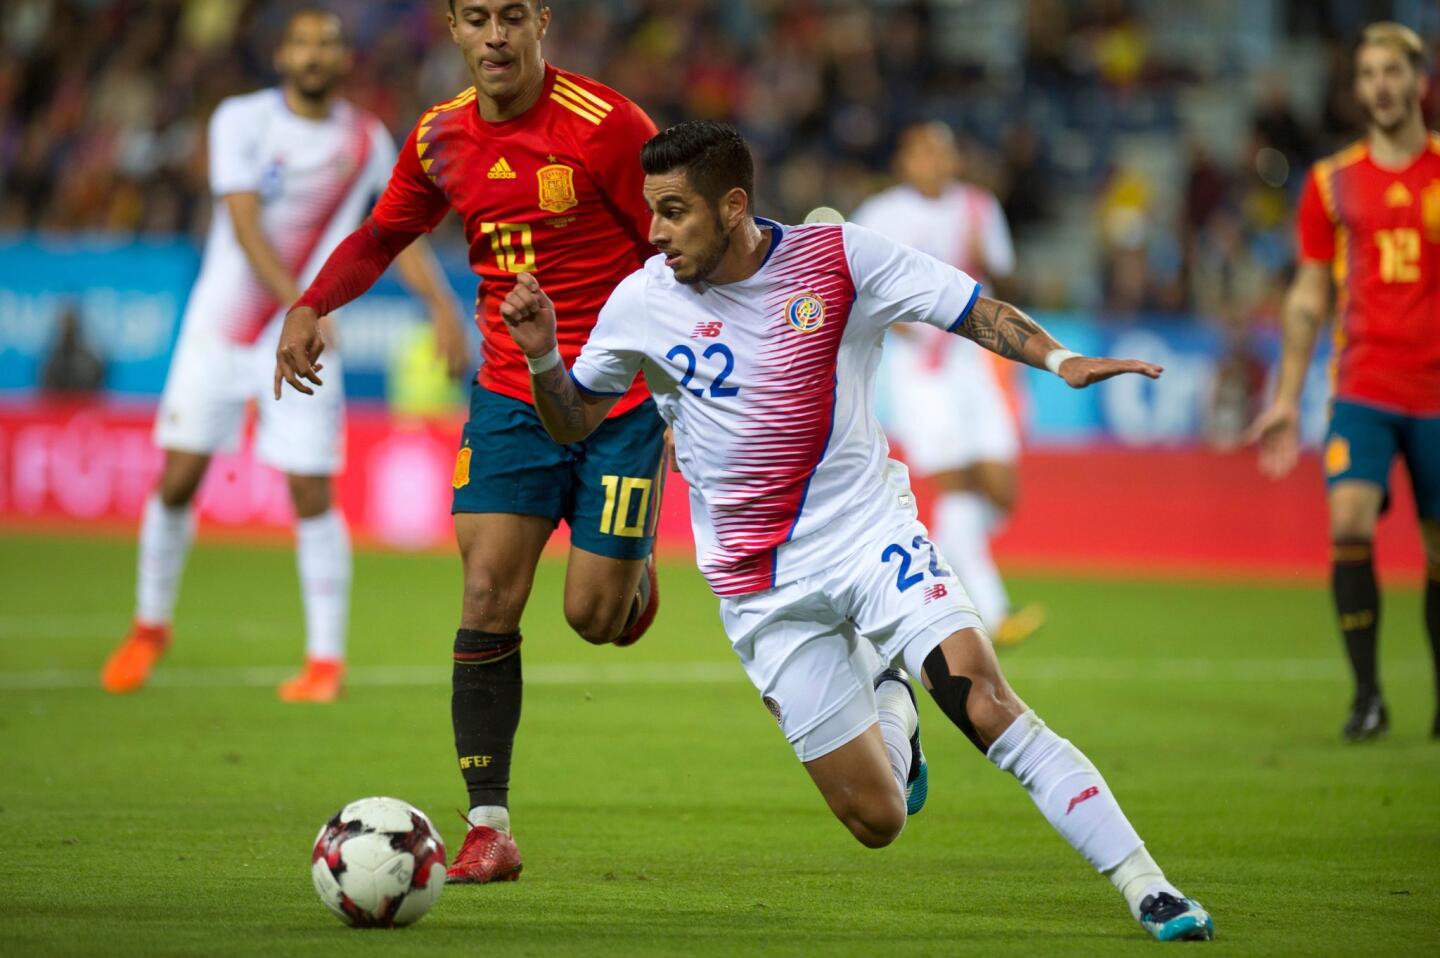 Ronald Matarrita, defensa del New York City FC, va al Mundial con la selección de Costa Rica.